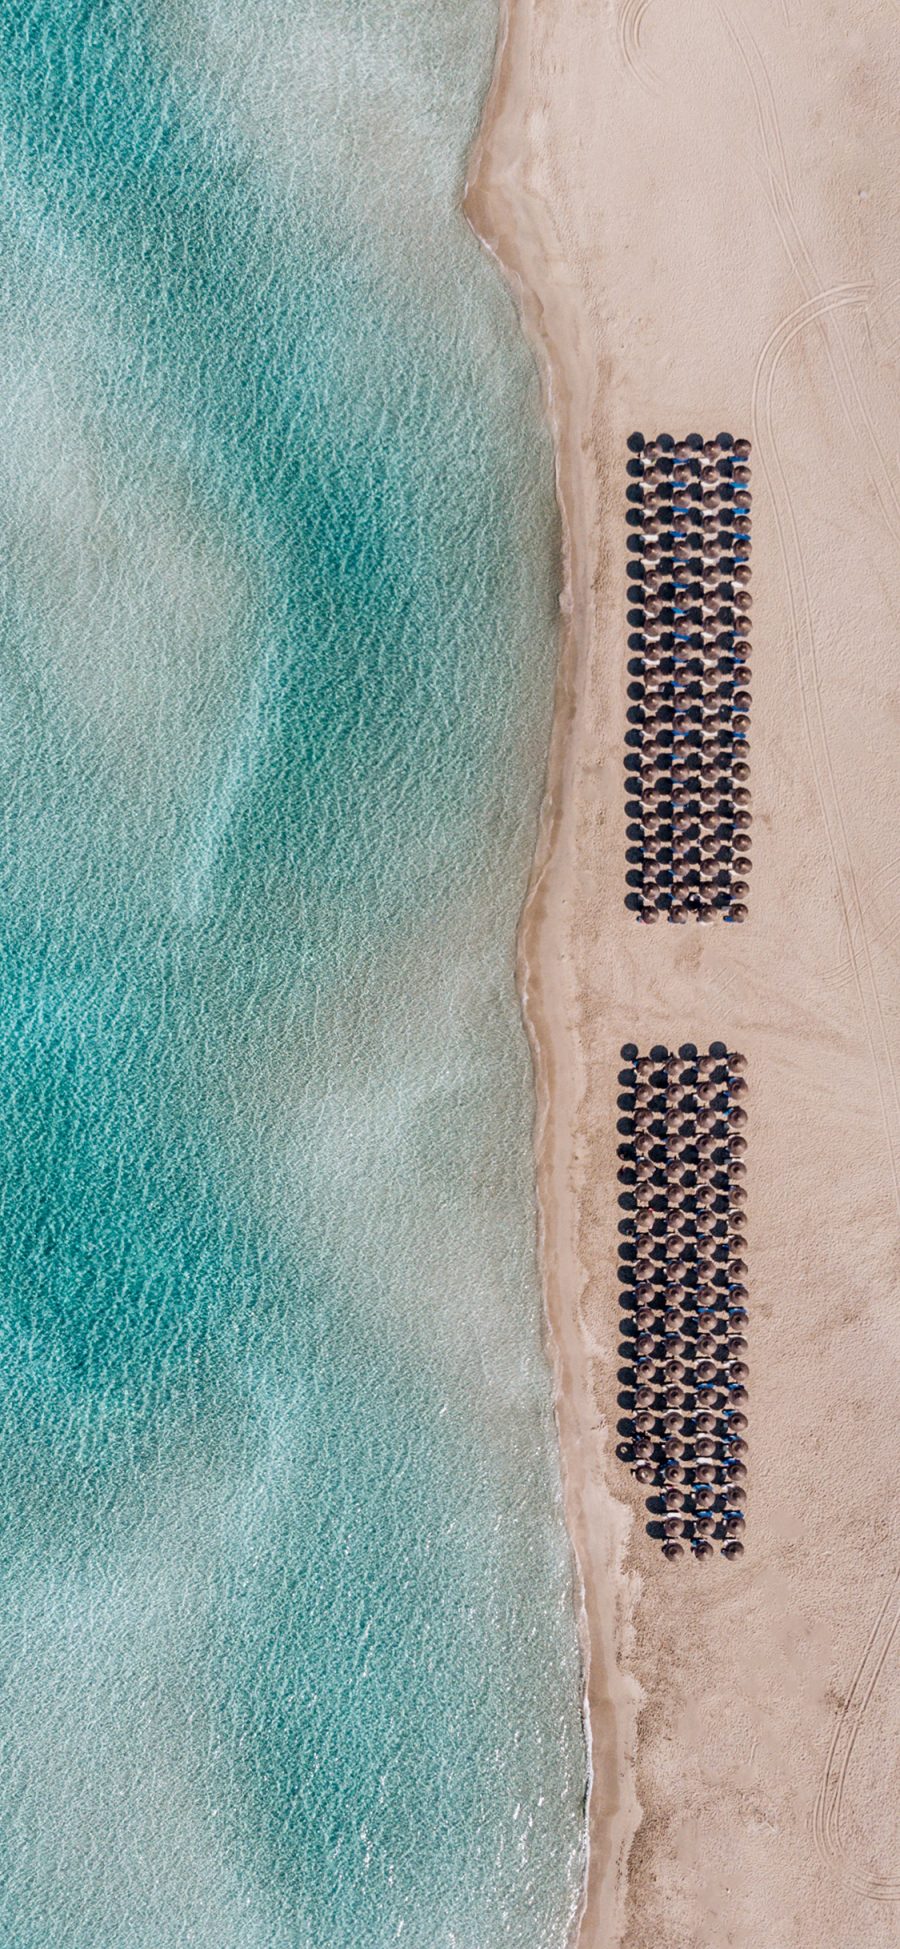 [2436×1125]大海 沙滩 遮阳伞 休闲度假 苹果手机壁纸图片